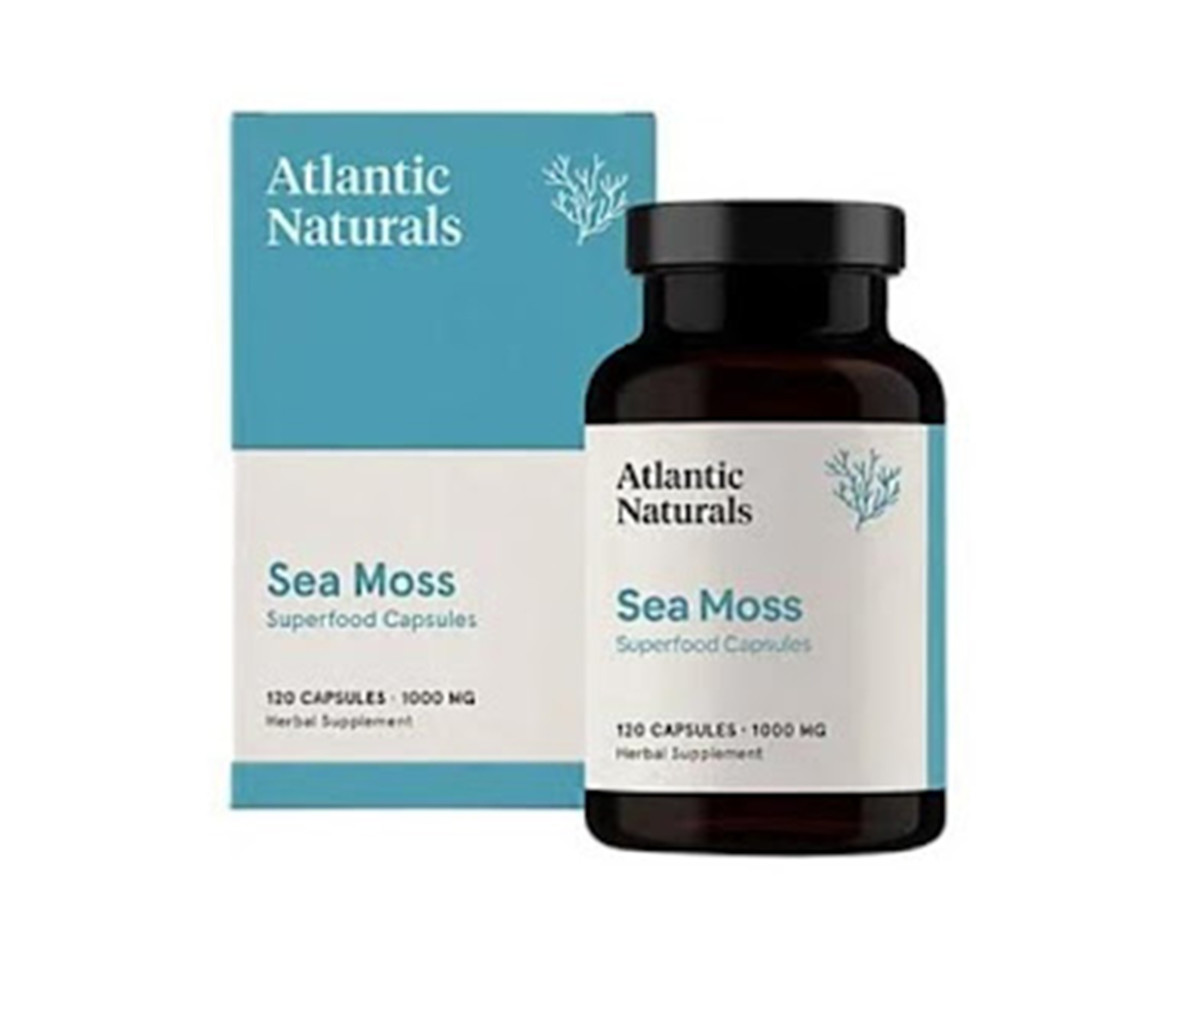 Atlantic Naturals Sea Moss